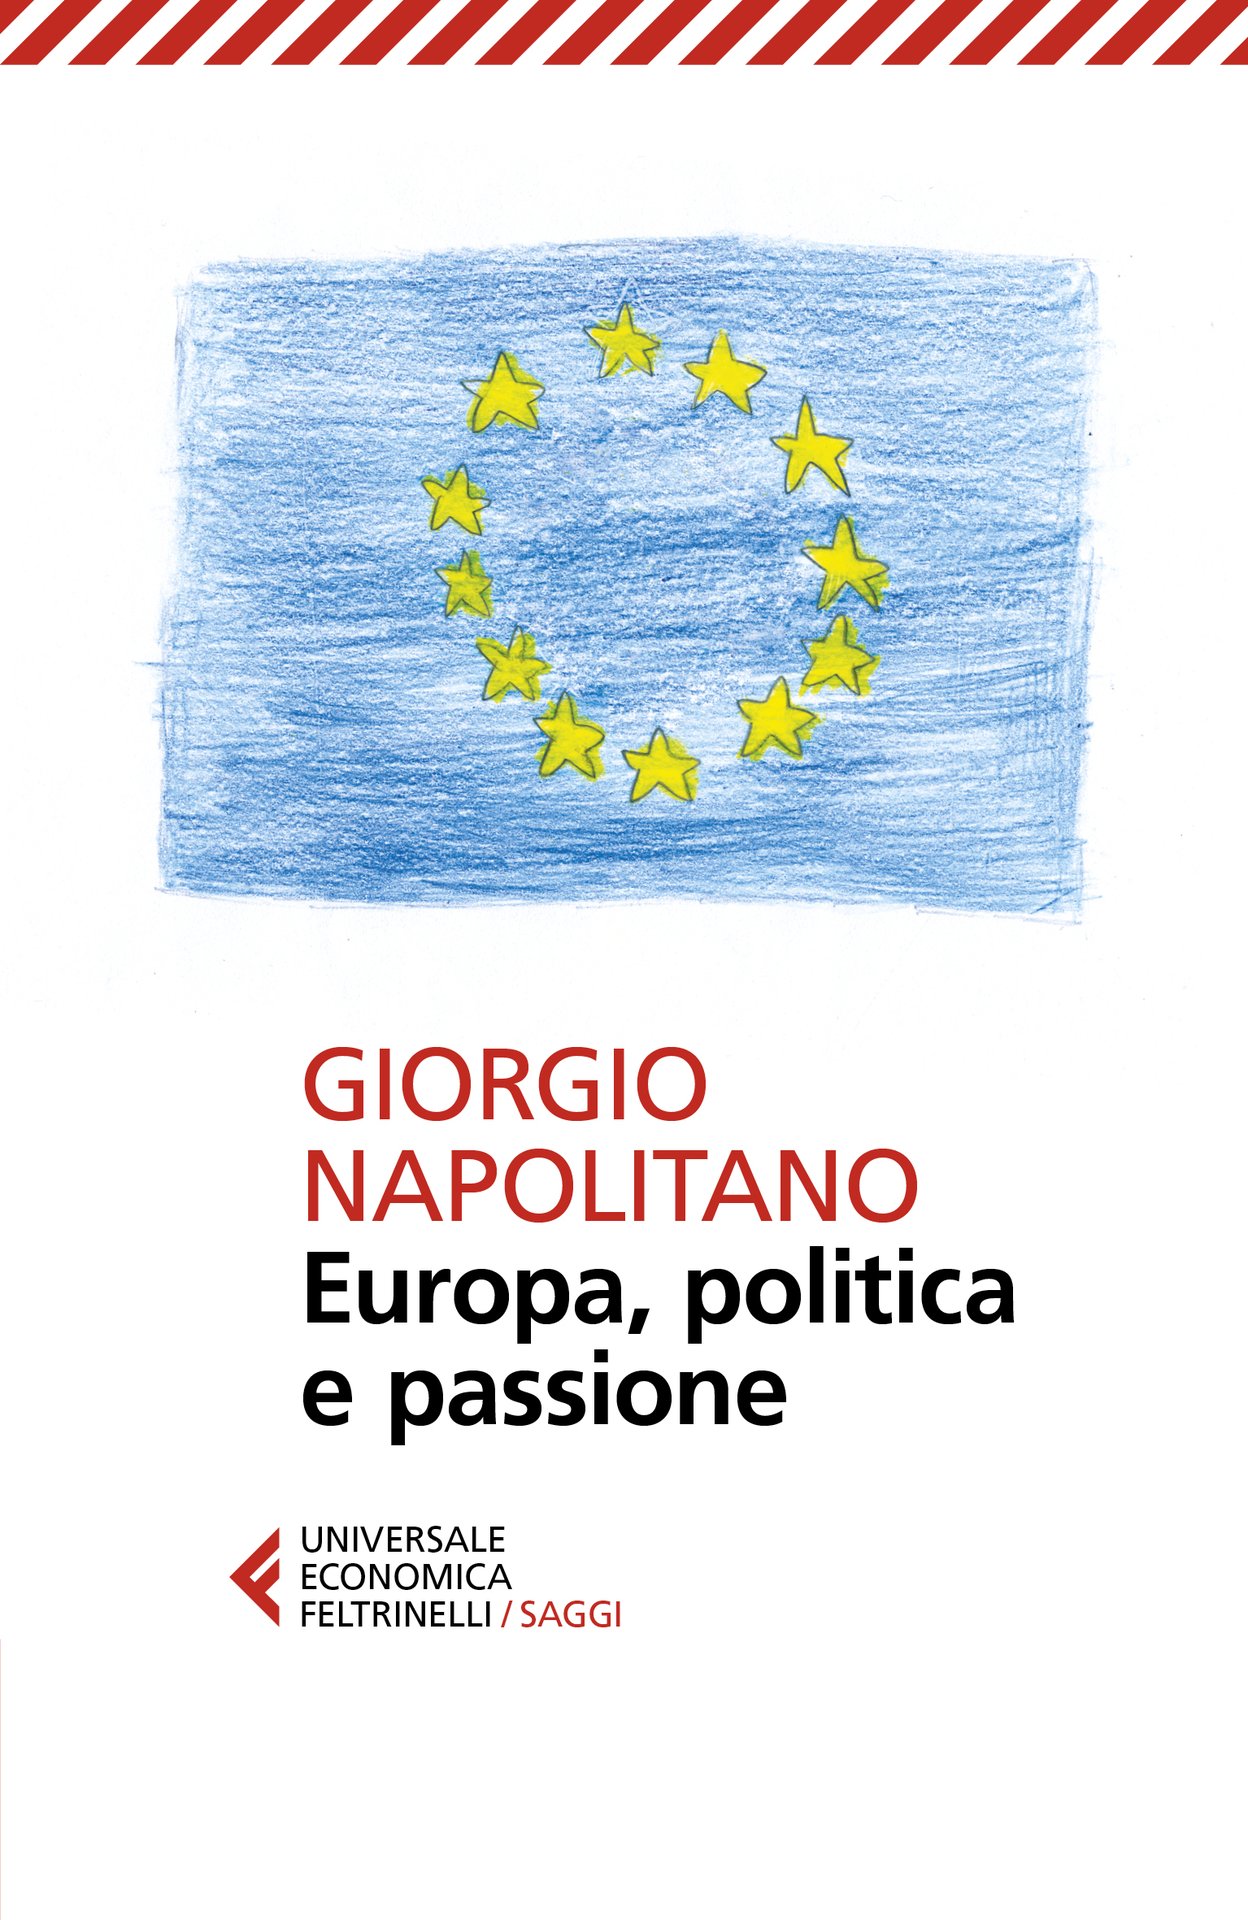 Giorgio Napolitano, convinto difensore dell’europeismo